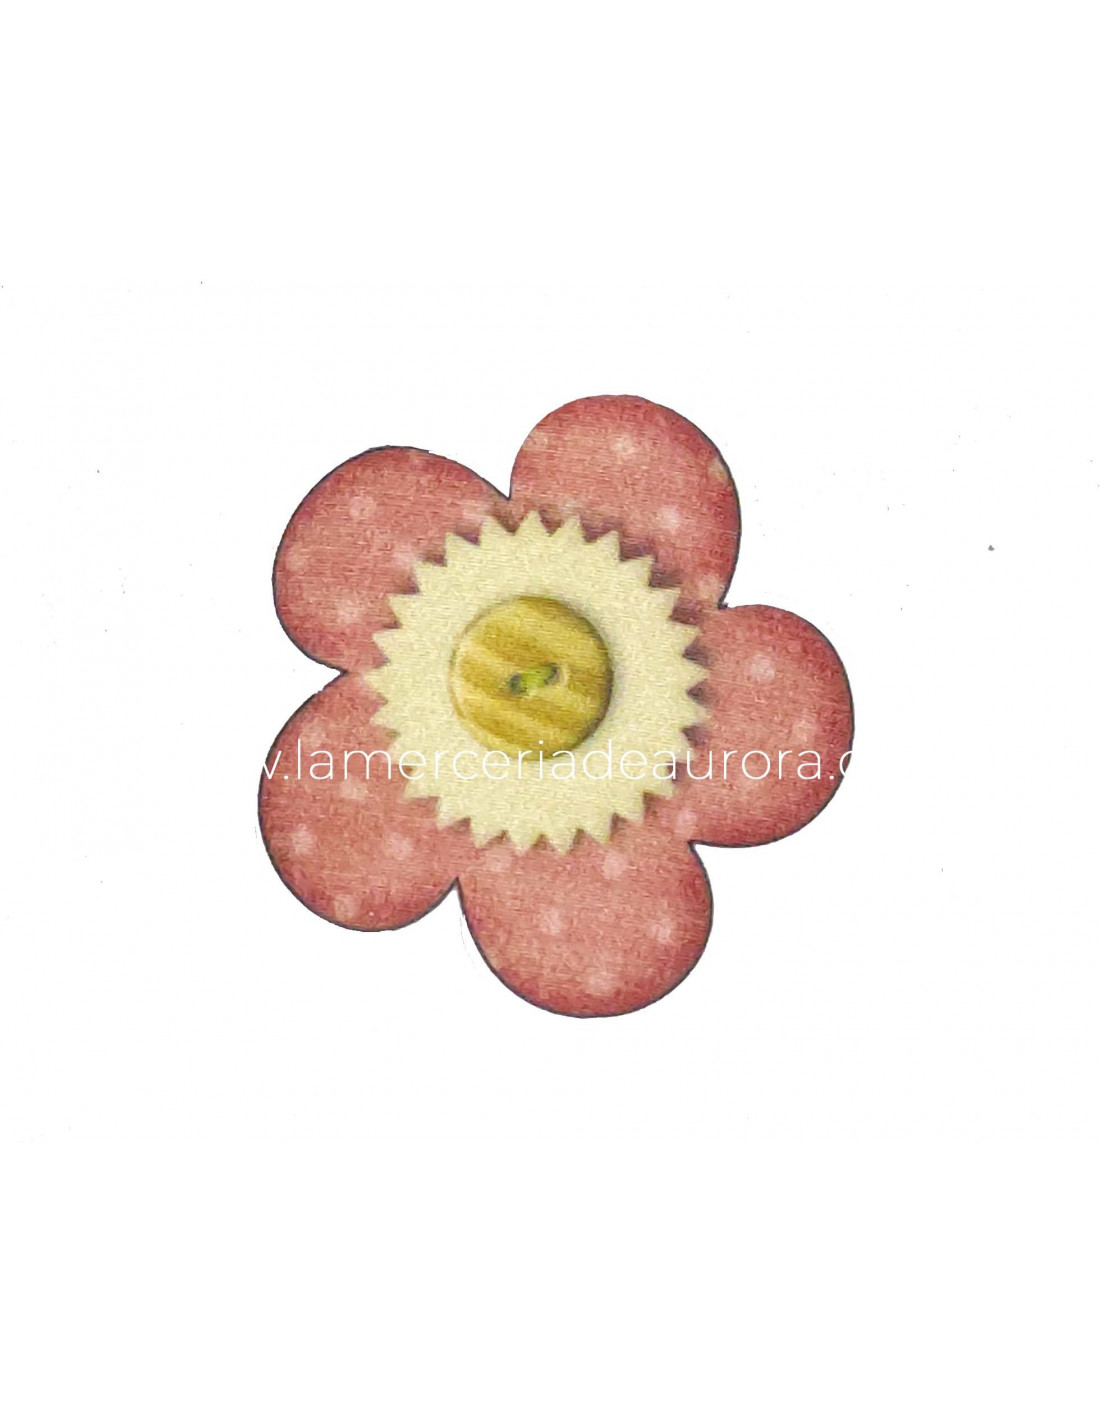 Parche termoadhesivo Flor con botón (6x6cms)